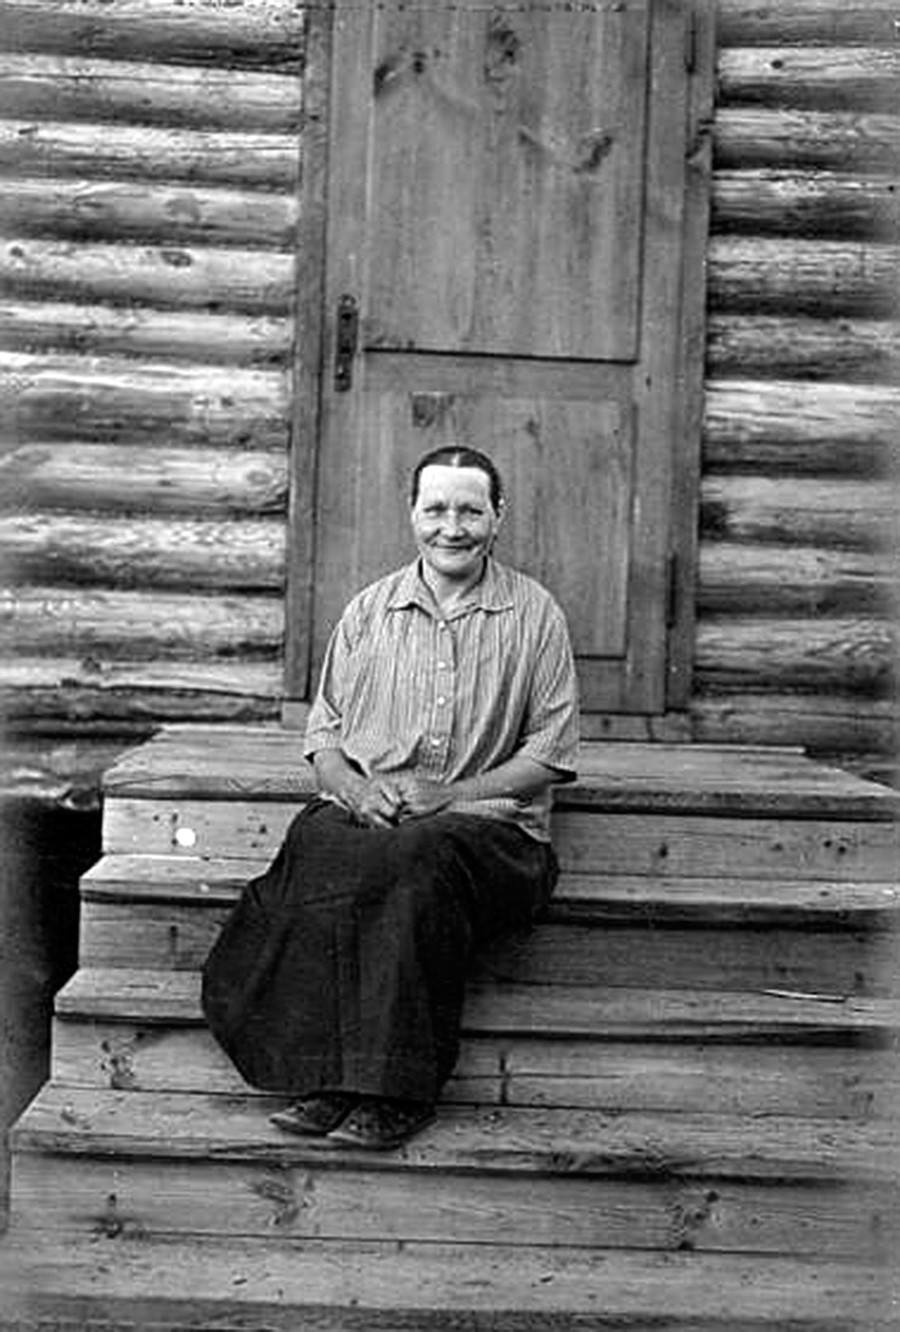 Retrato de mulher sentada à entrada de casa, em escada de madeira.